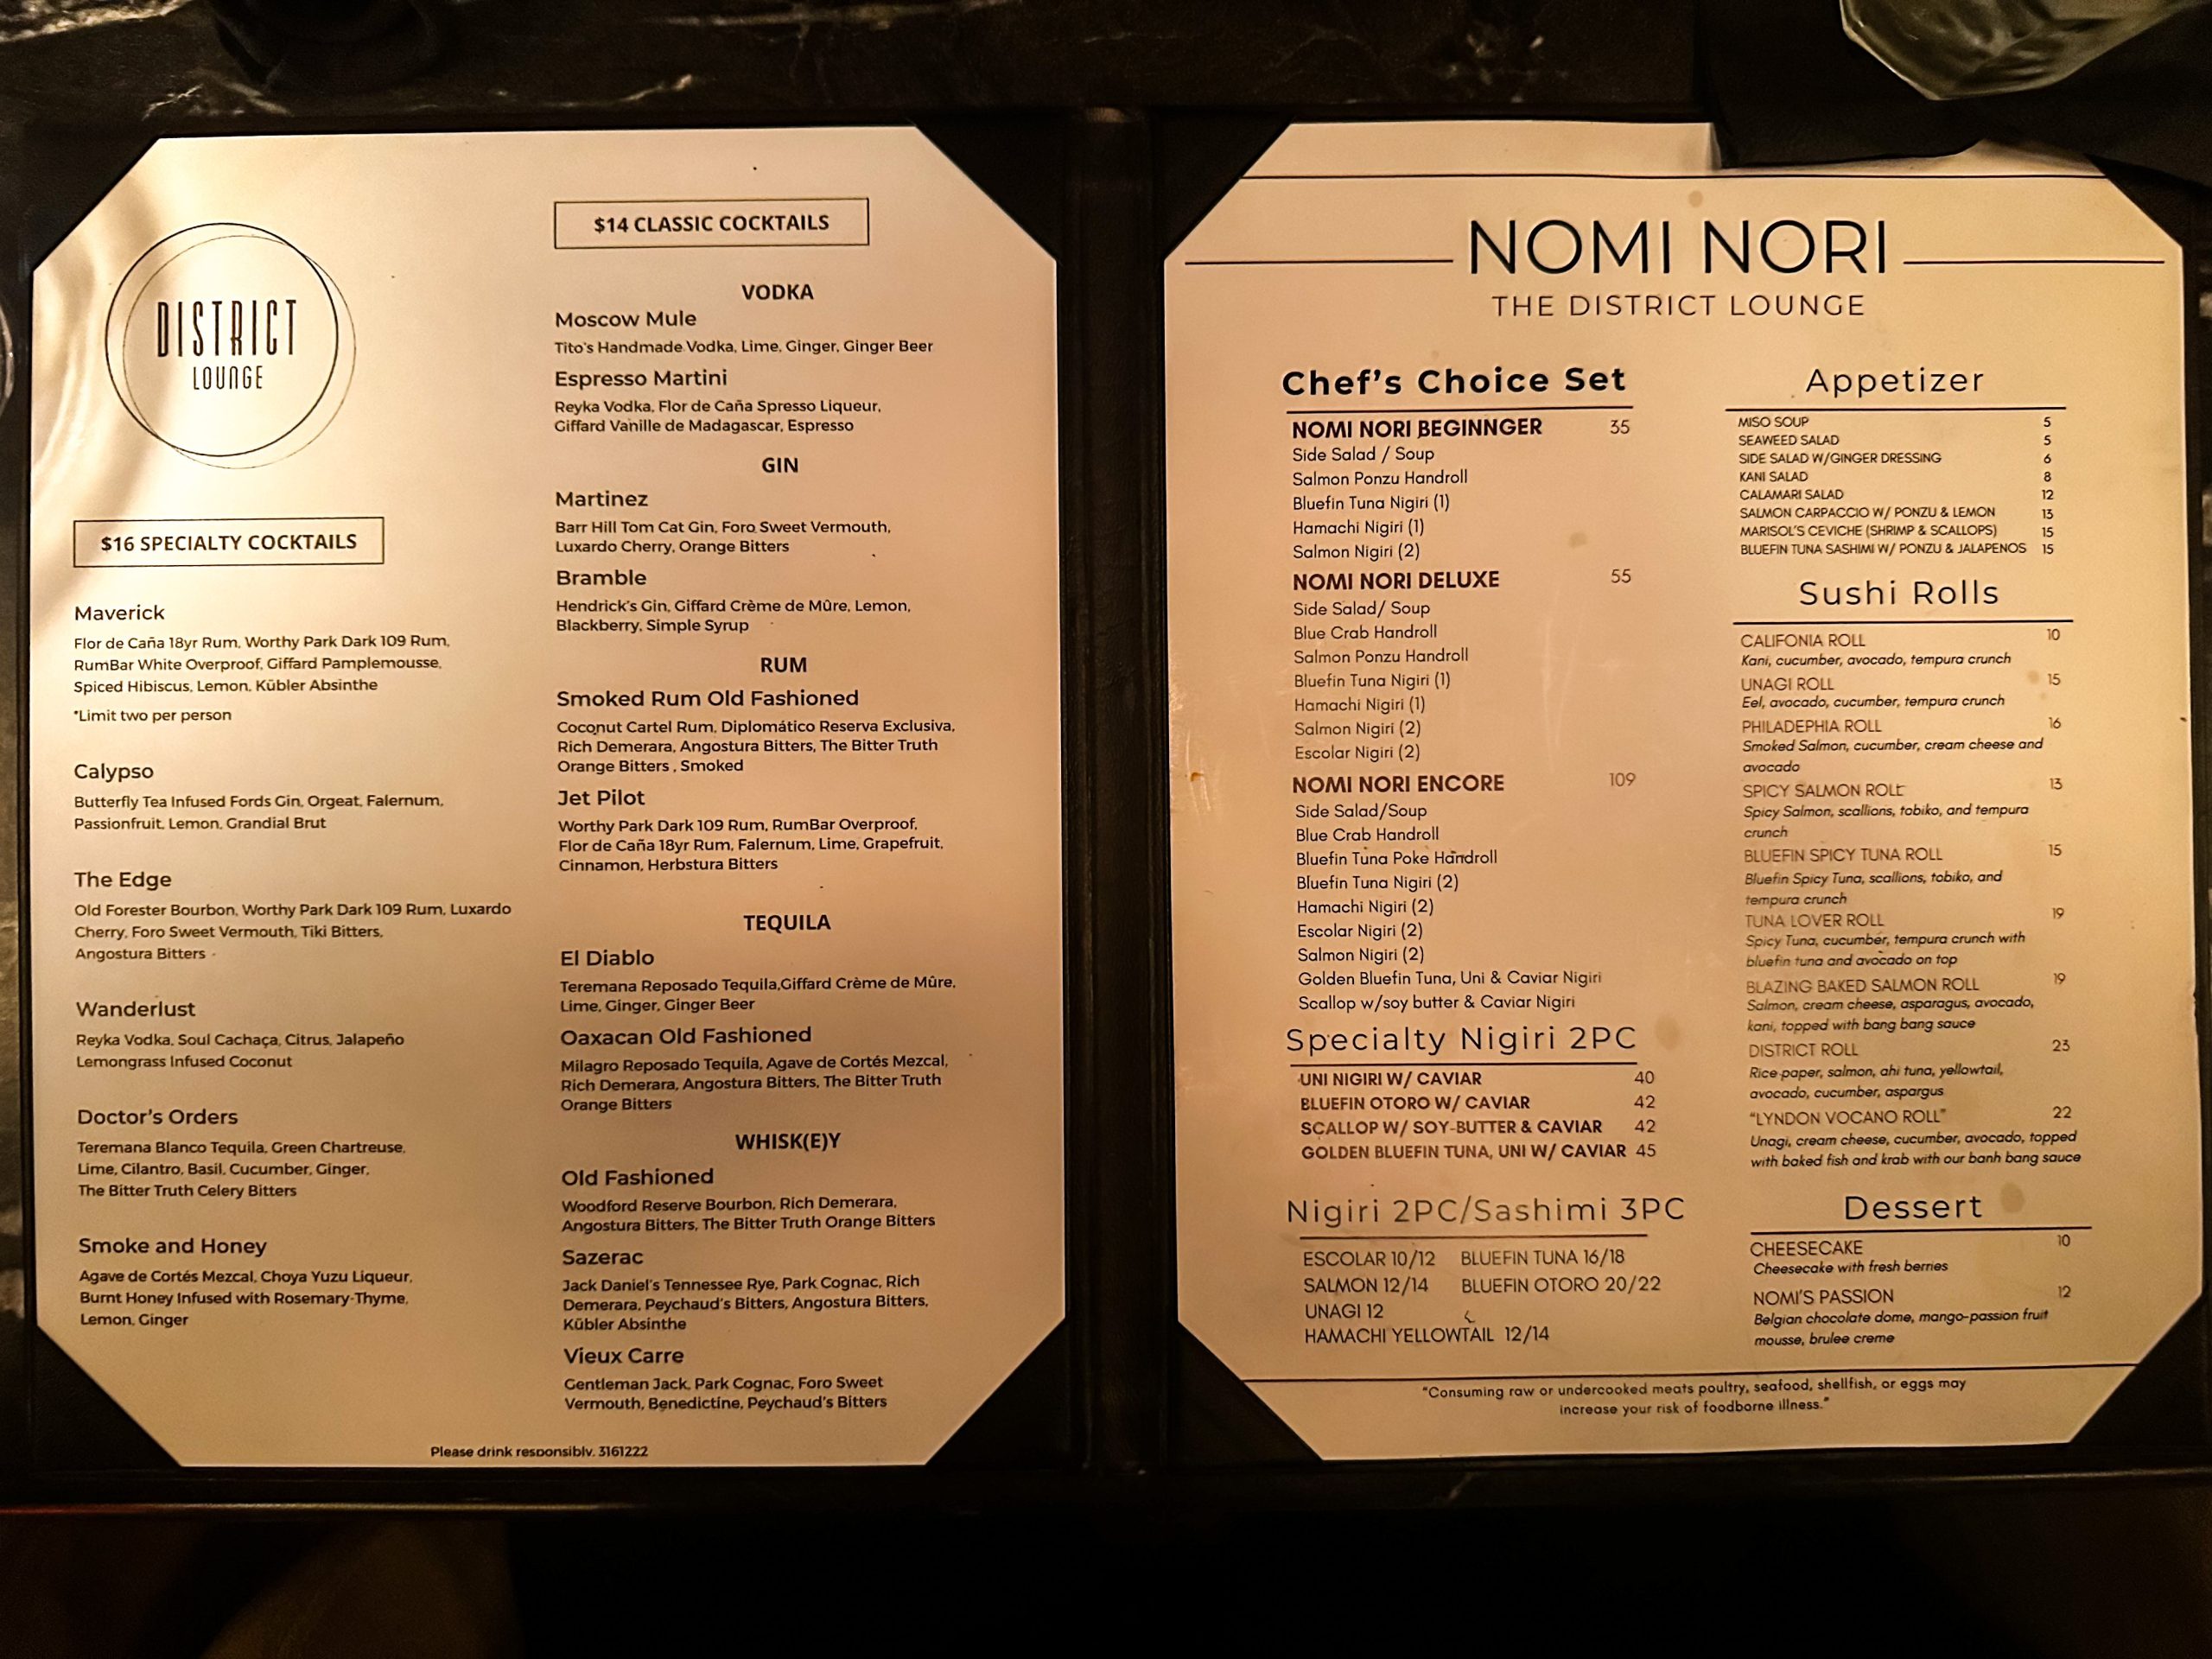 A closer view of the menu